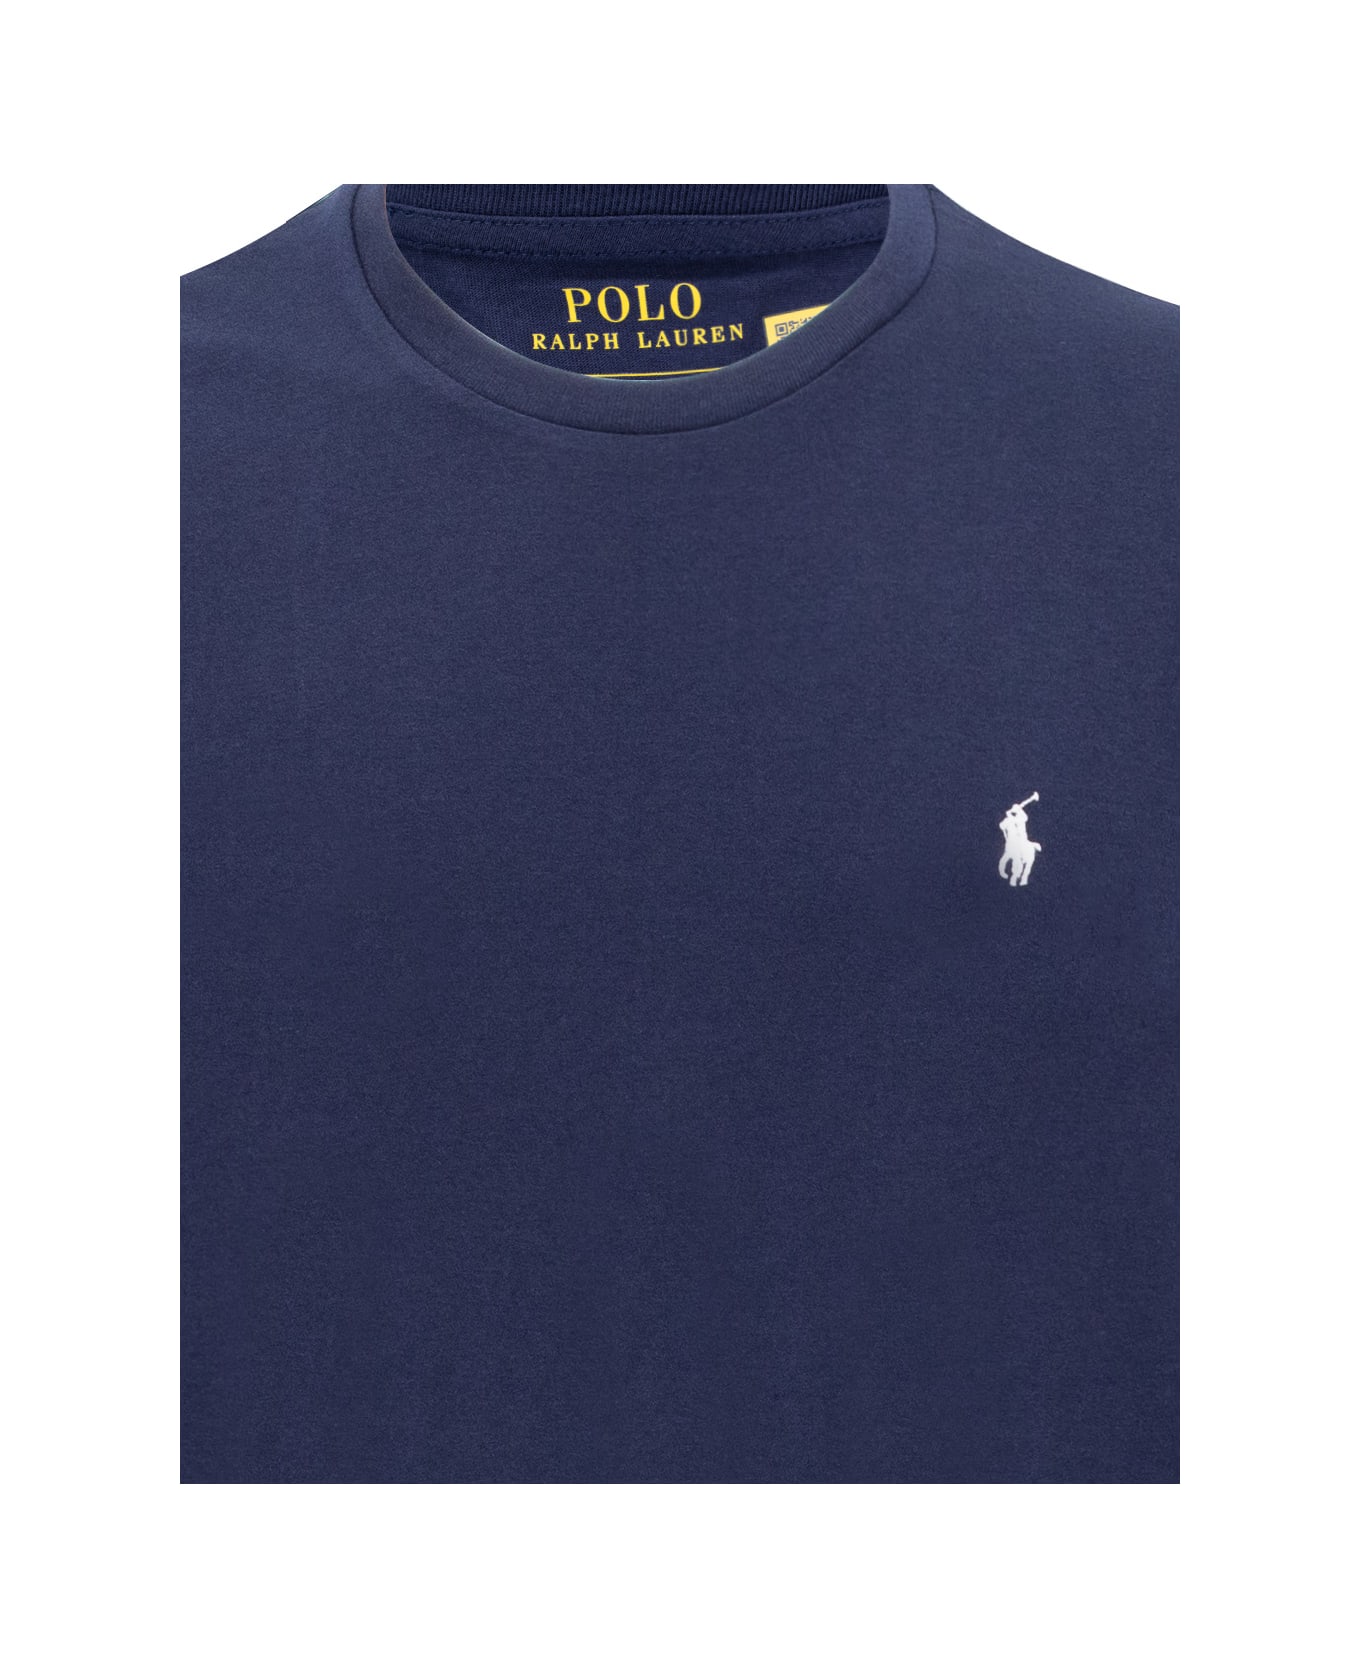 Polo Ralph Lauren T-shirt - CRUISE NAVY